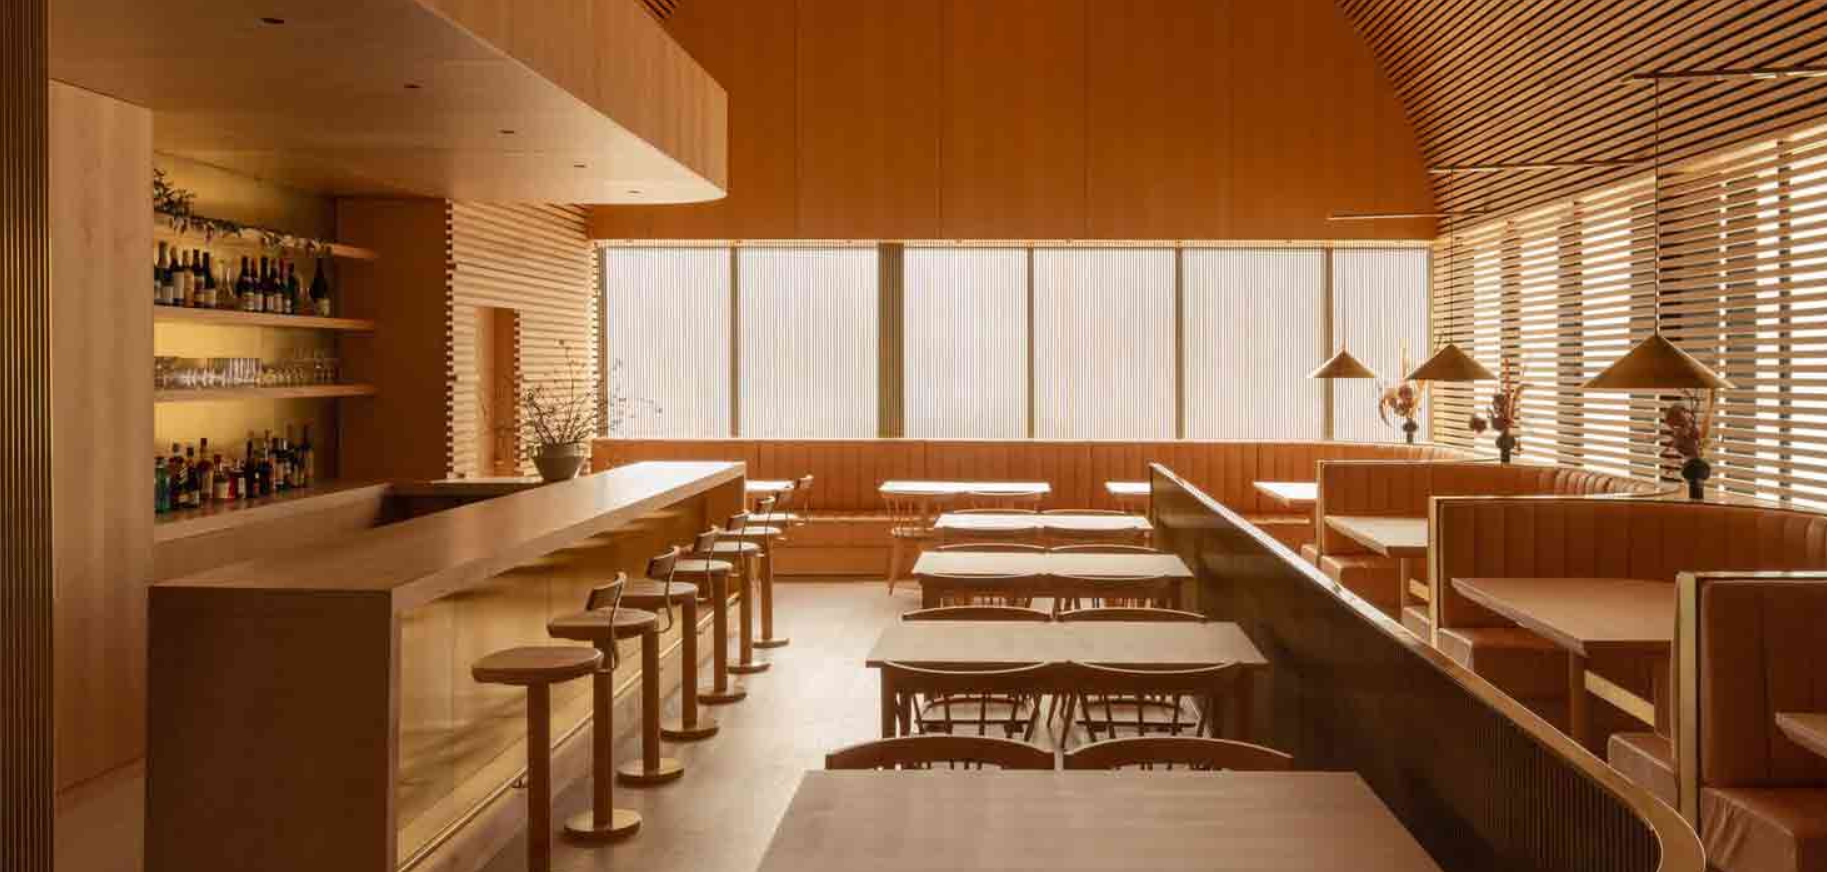 Arquitectos para restaurantes: Cómo el diseño arquitectónico cambia la gastronómica 9